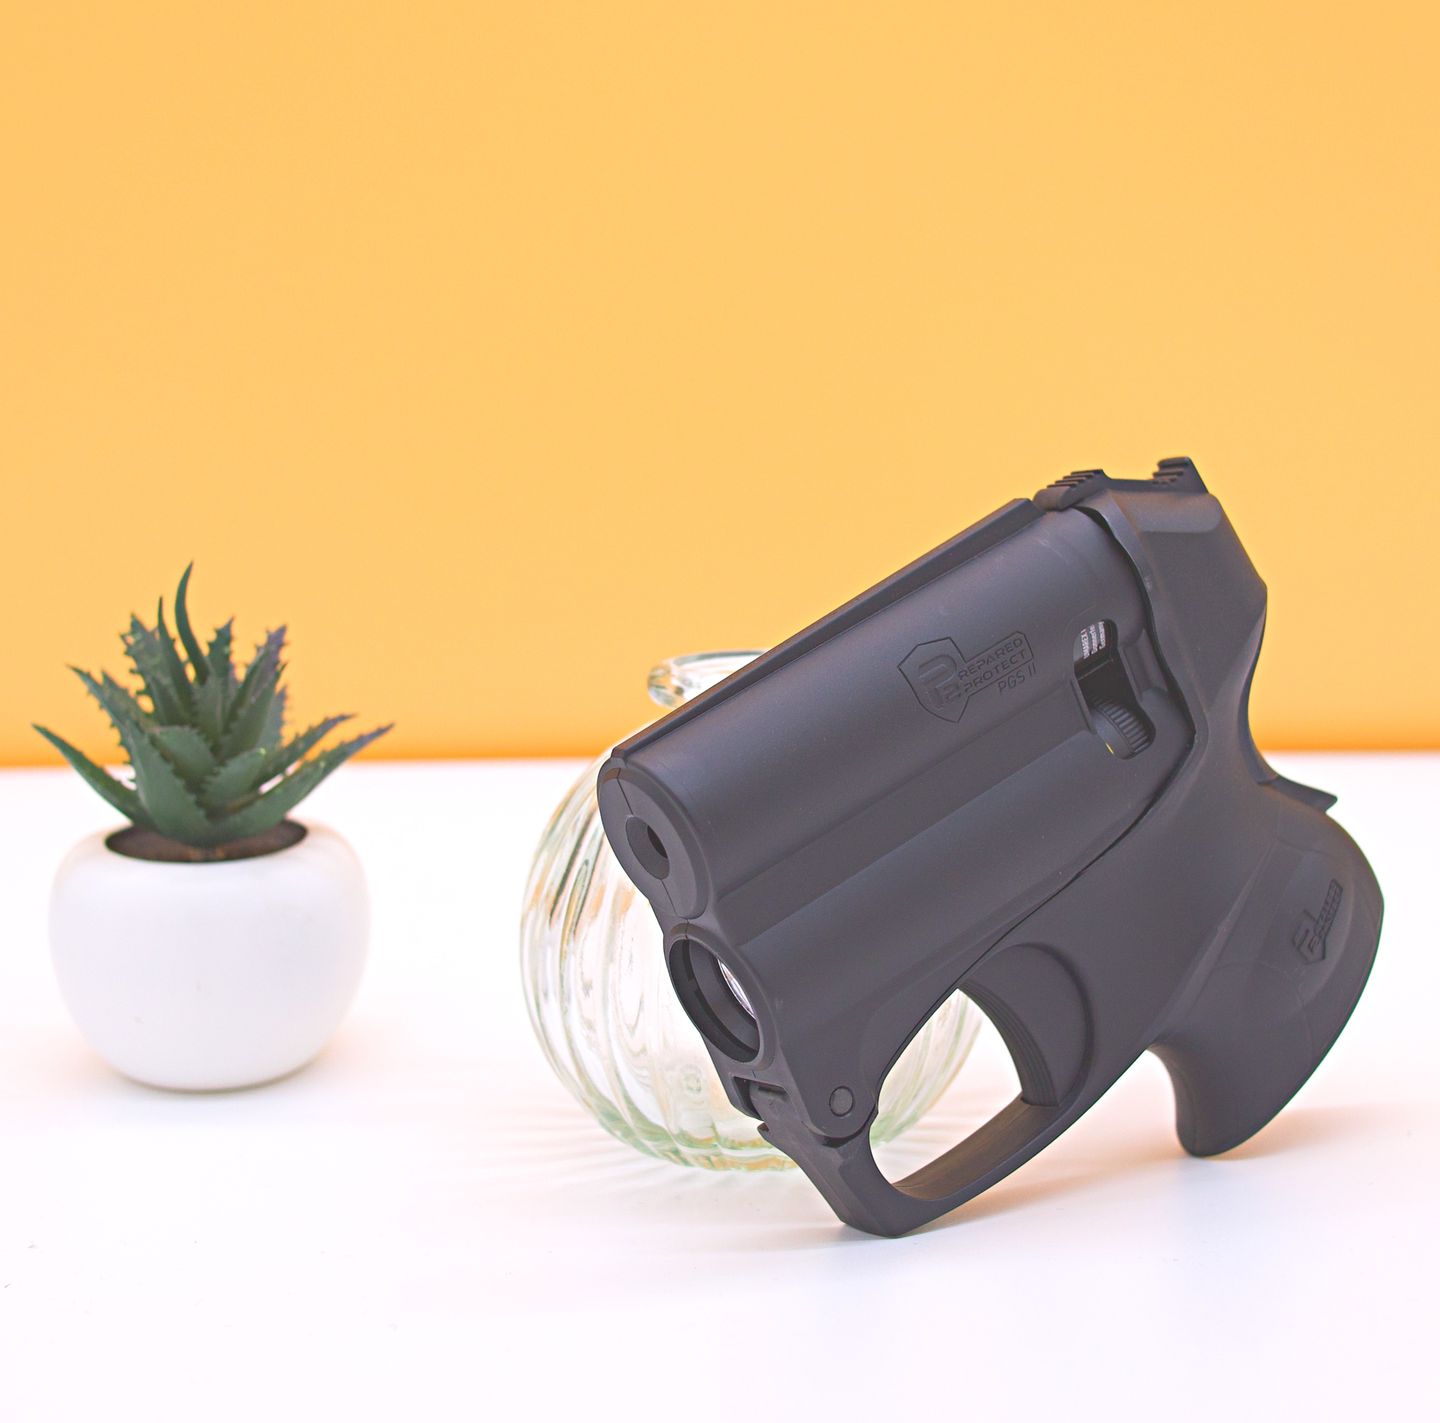 Spray Lacrimogeno - PGS II, una pistola al gel lacrimogeno riflessa per la difesa notturna